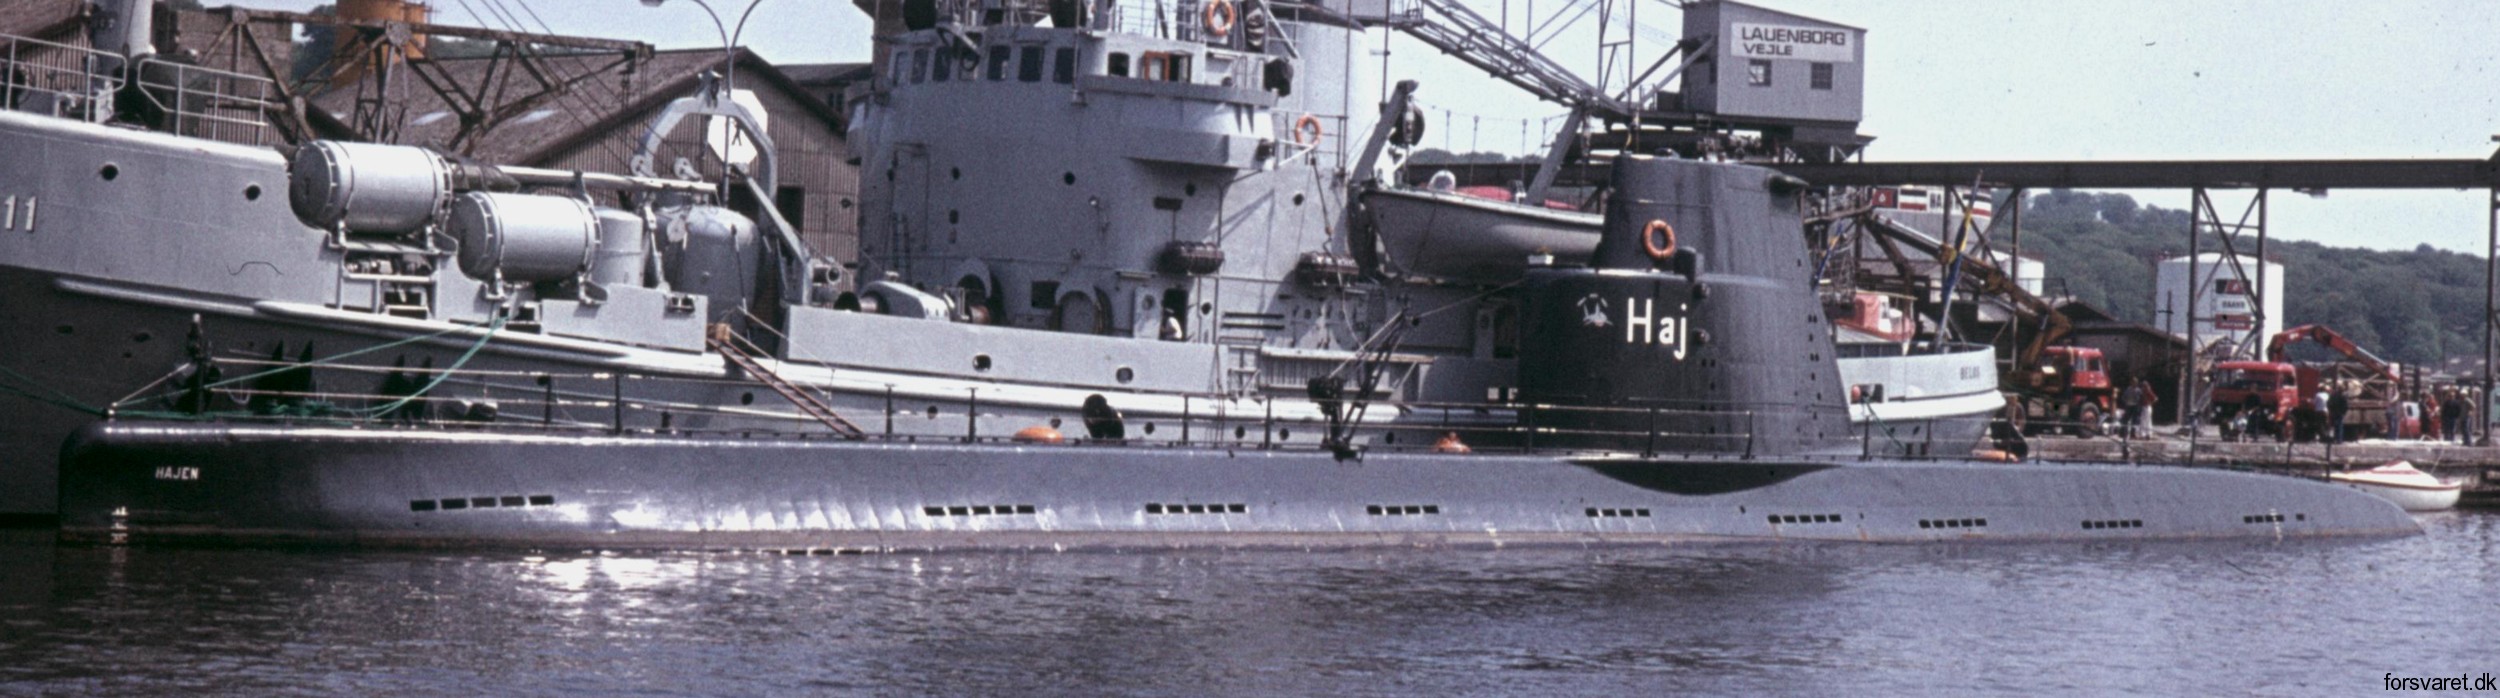 hms hswms hajen a10 class attack submarine ubåt swedish navy svenska marinen försvarsmakten 07